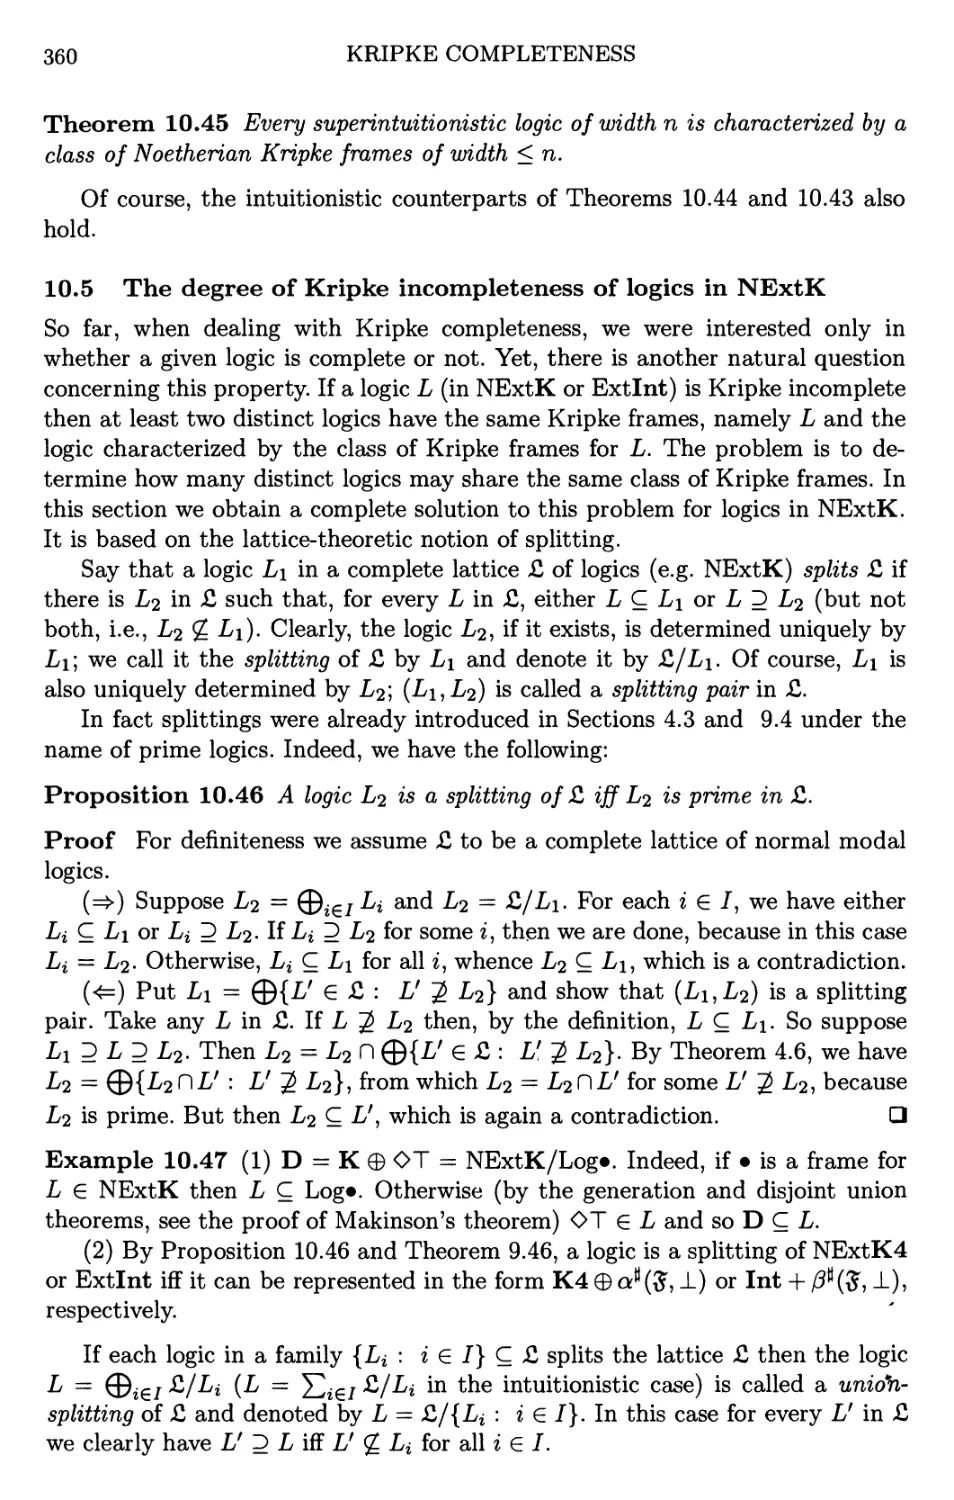 10.5 The degree of Kripke incompleteness of logics NExtK